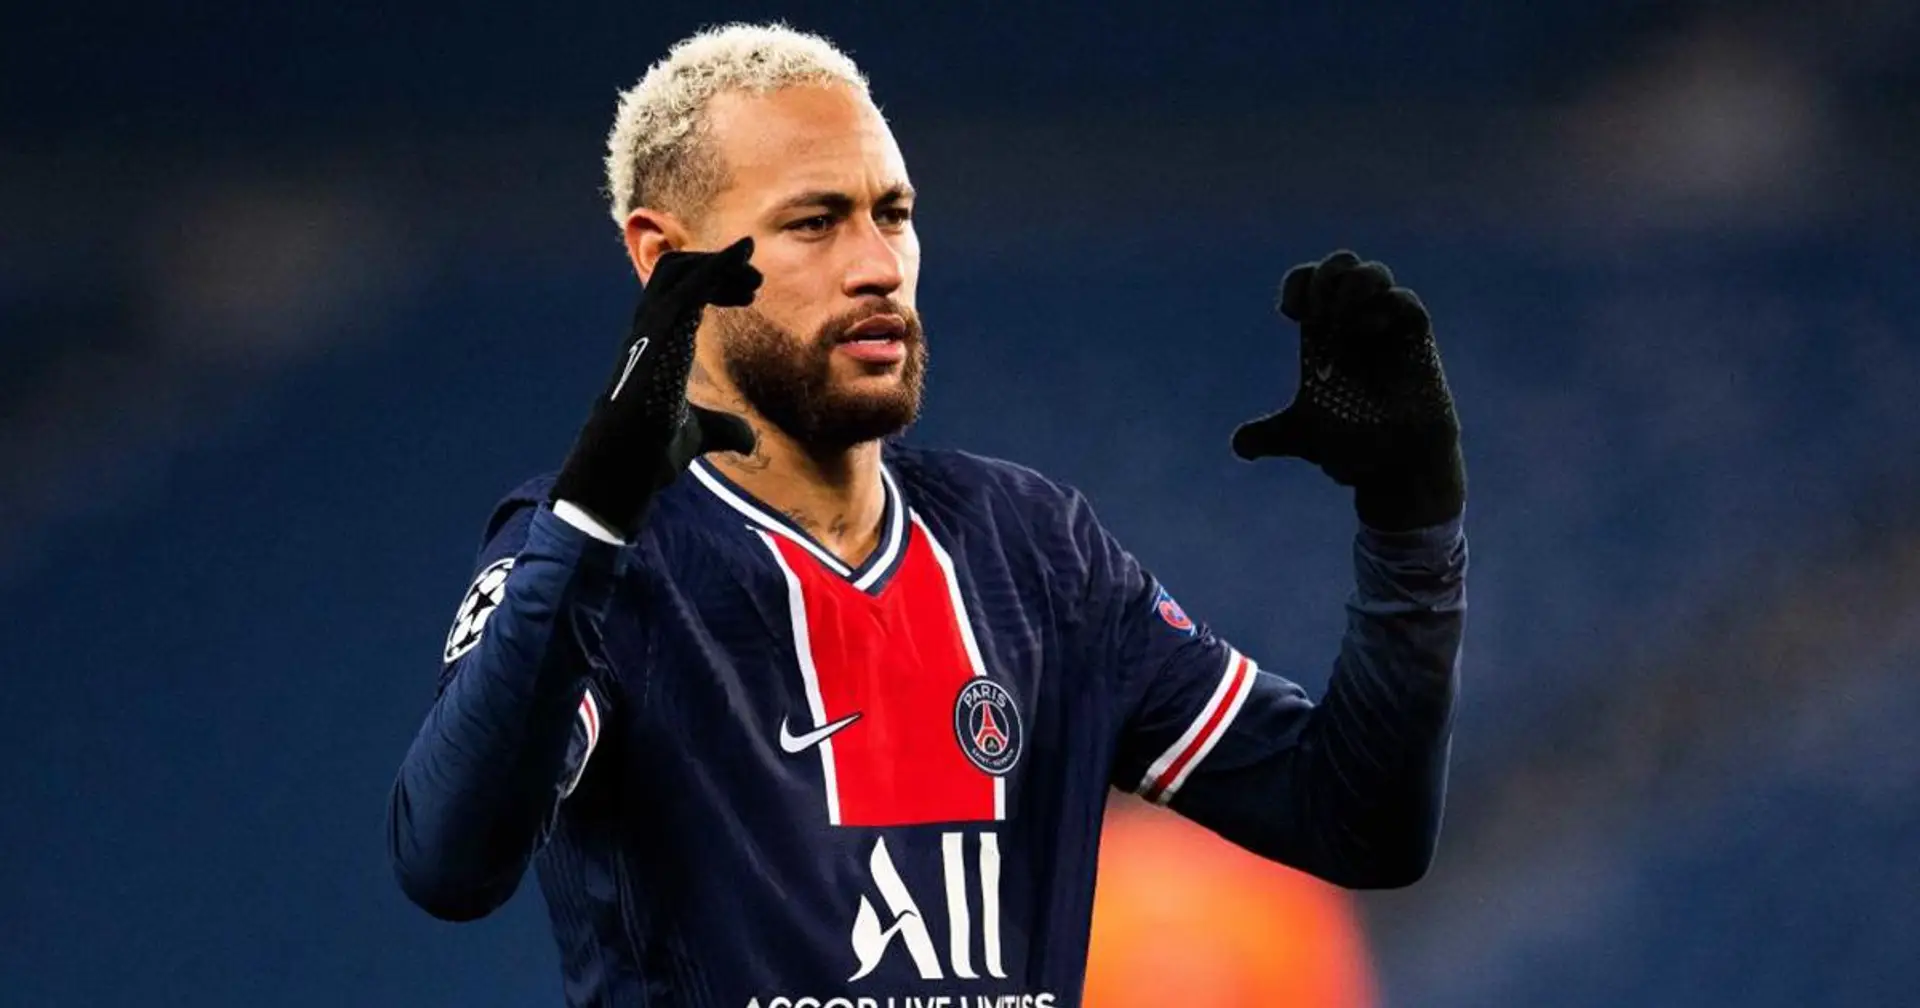 Neymar veut revenir à Barcelone, arrête les négociations contractuelles avec le PSG (fiabilité: 4 étoiles)